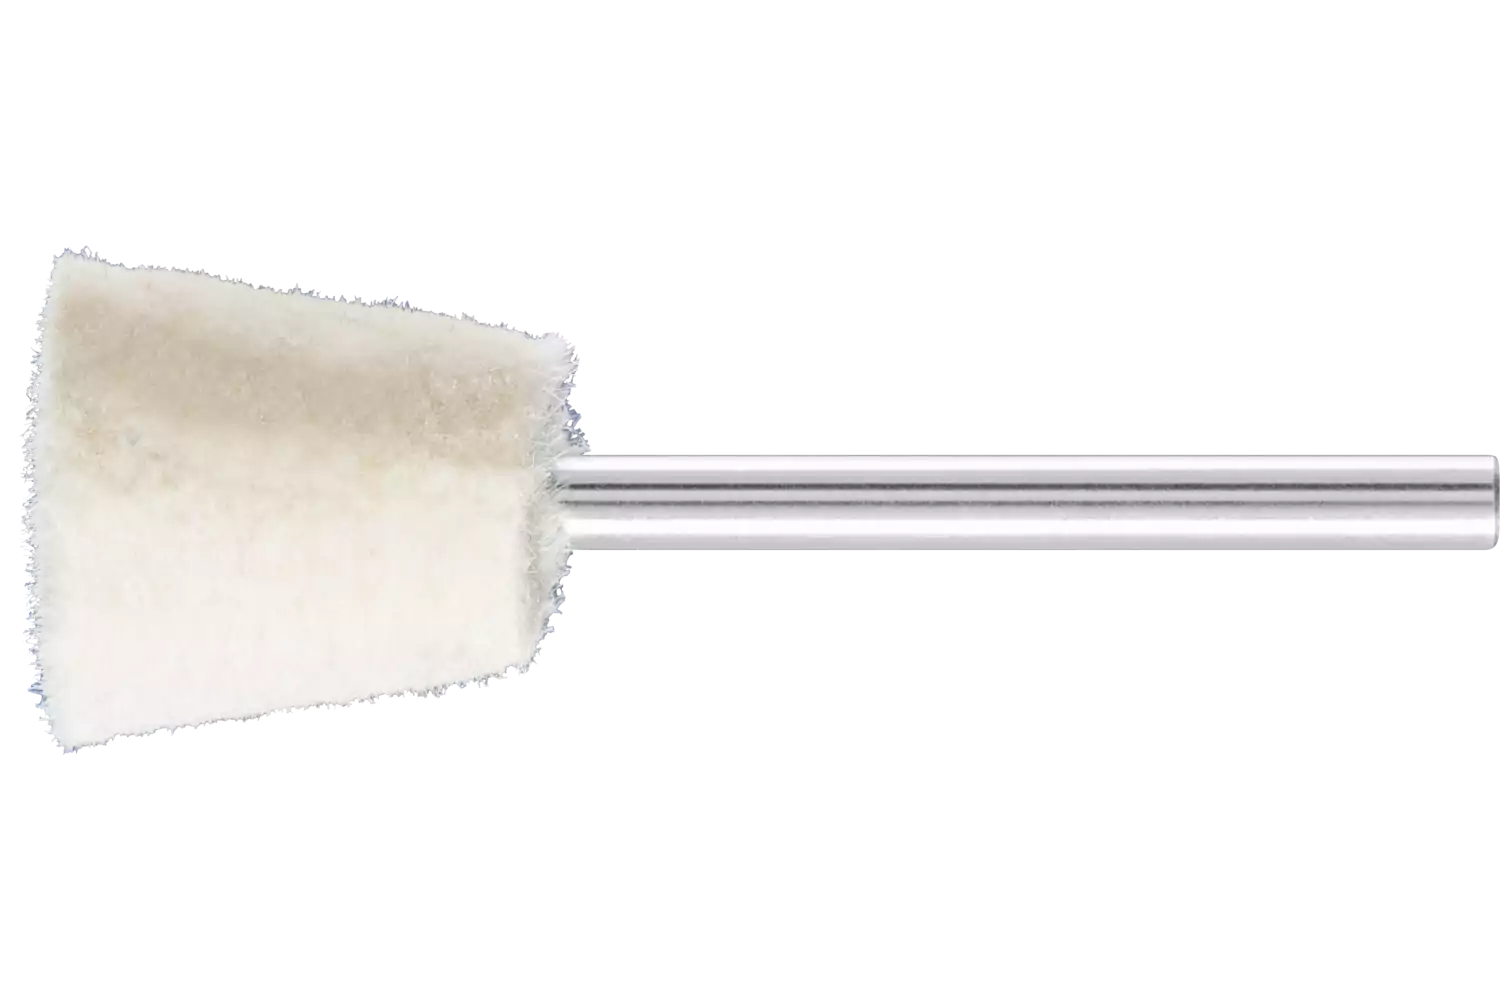 Feltri con gambo per lucidare duri forma a cono rovesciato Ø 15x15 mm, gambo Ø 3 mm 1